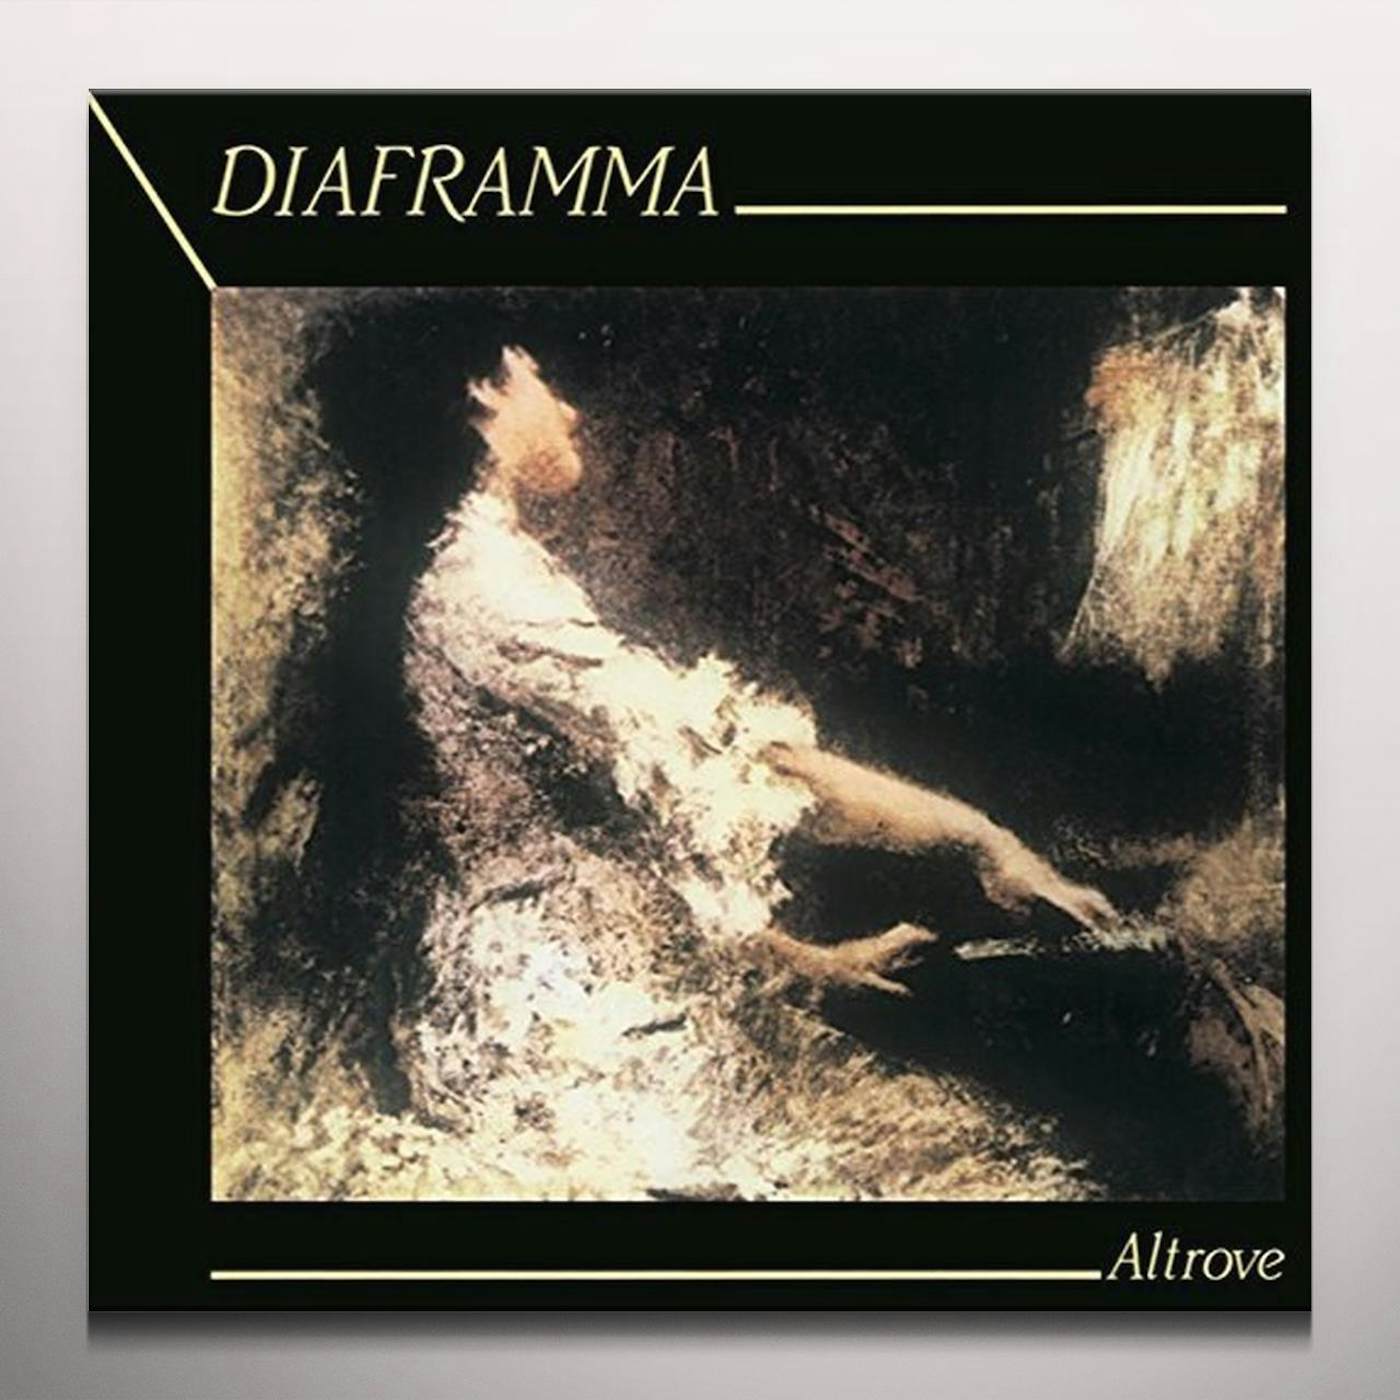 Diaframma Altrove Vinyl Record